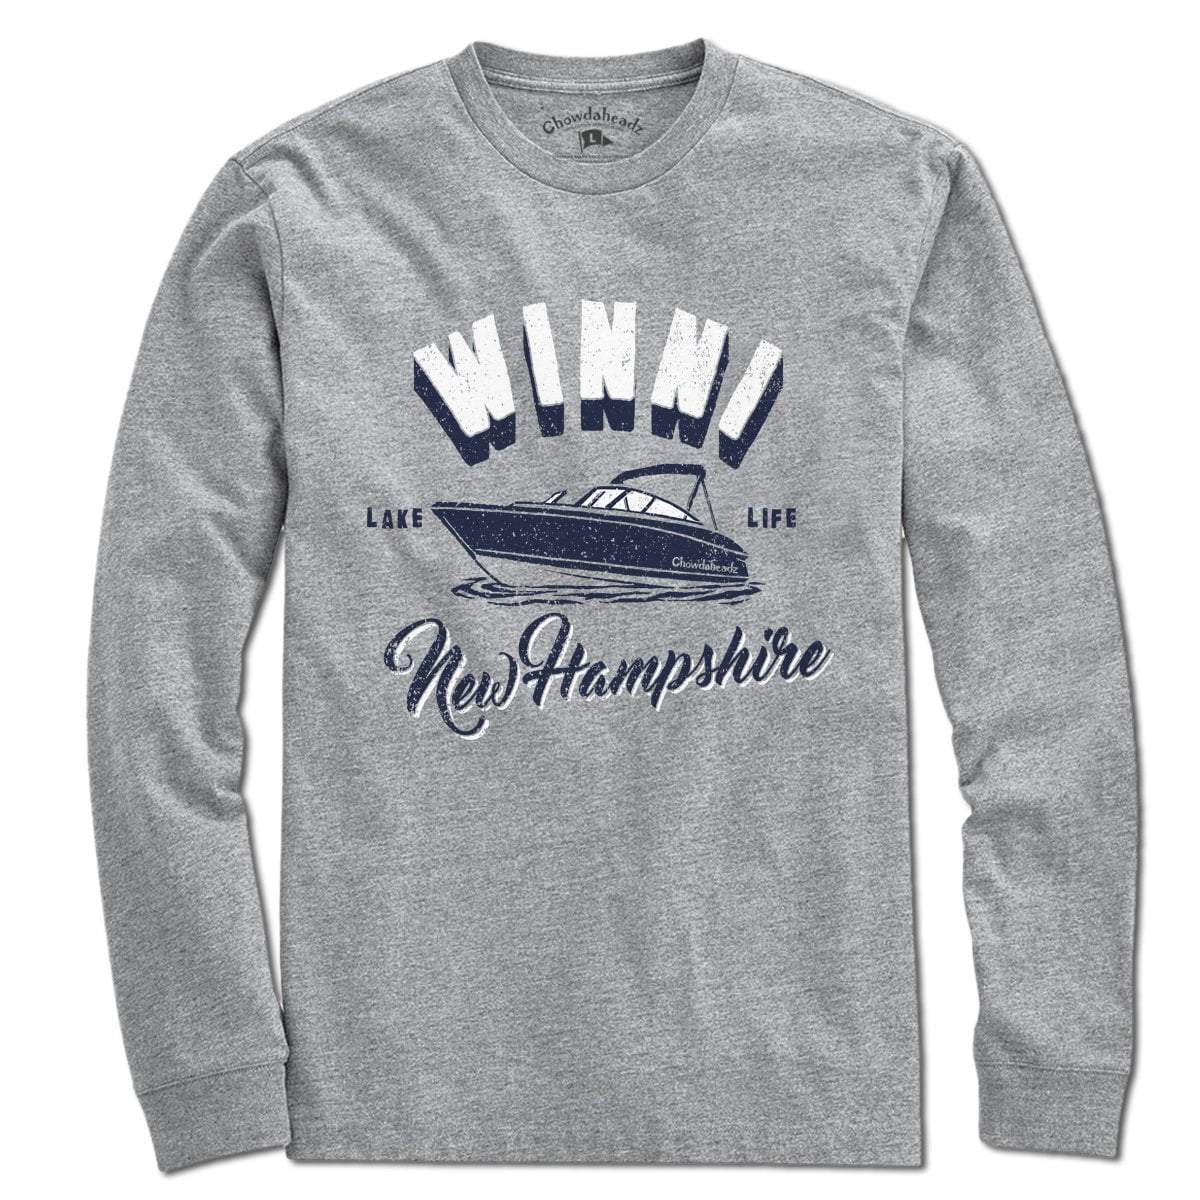 Winni New Hampshire T-Shirt - Chowdaheadz